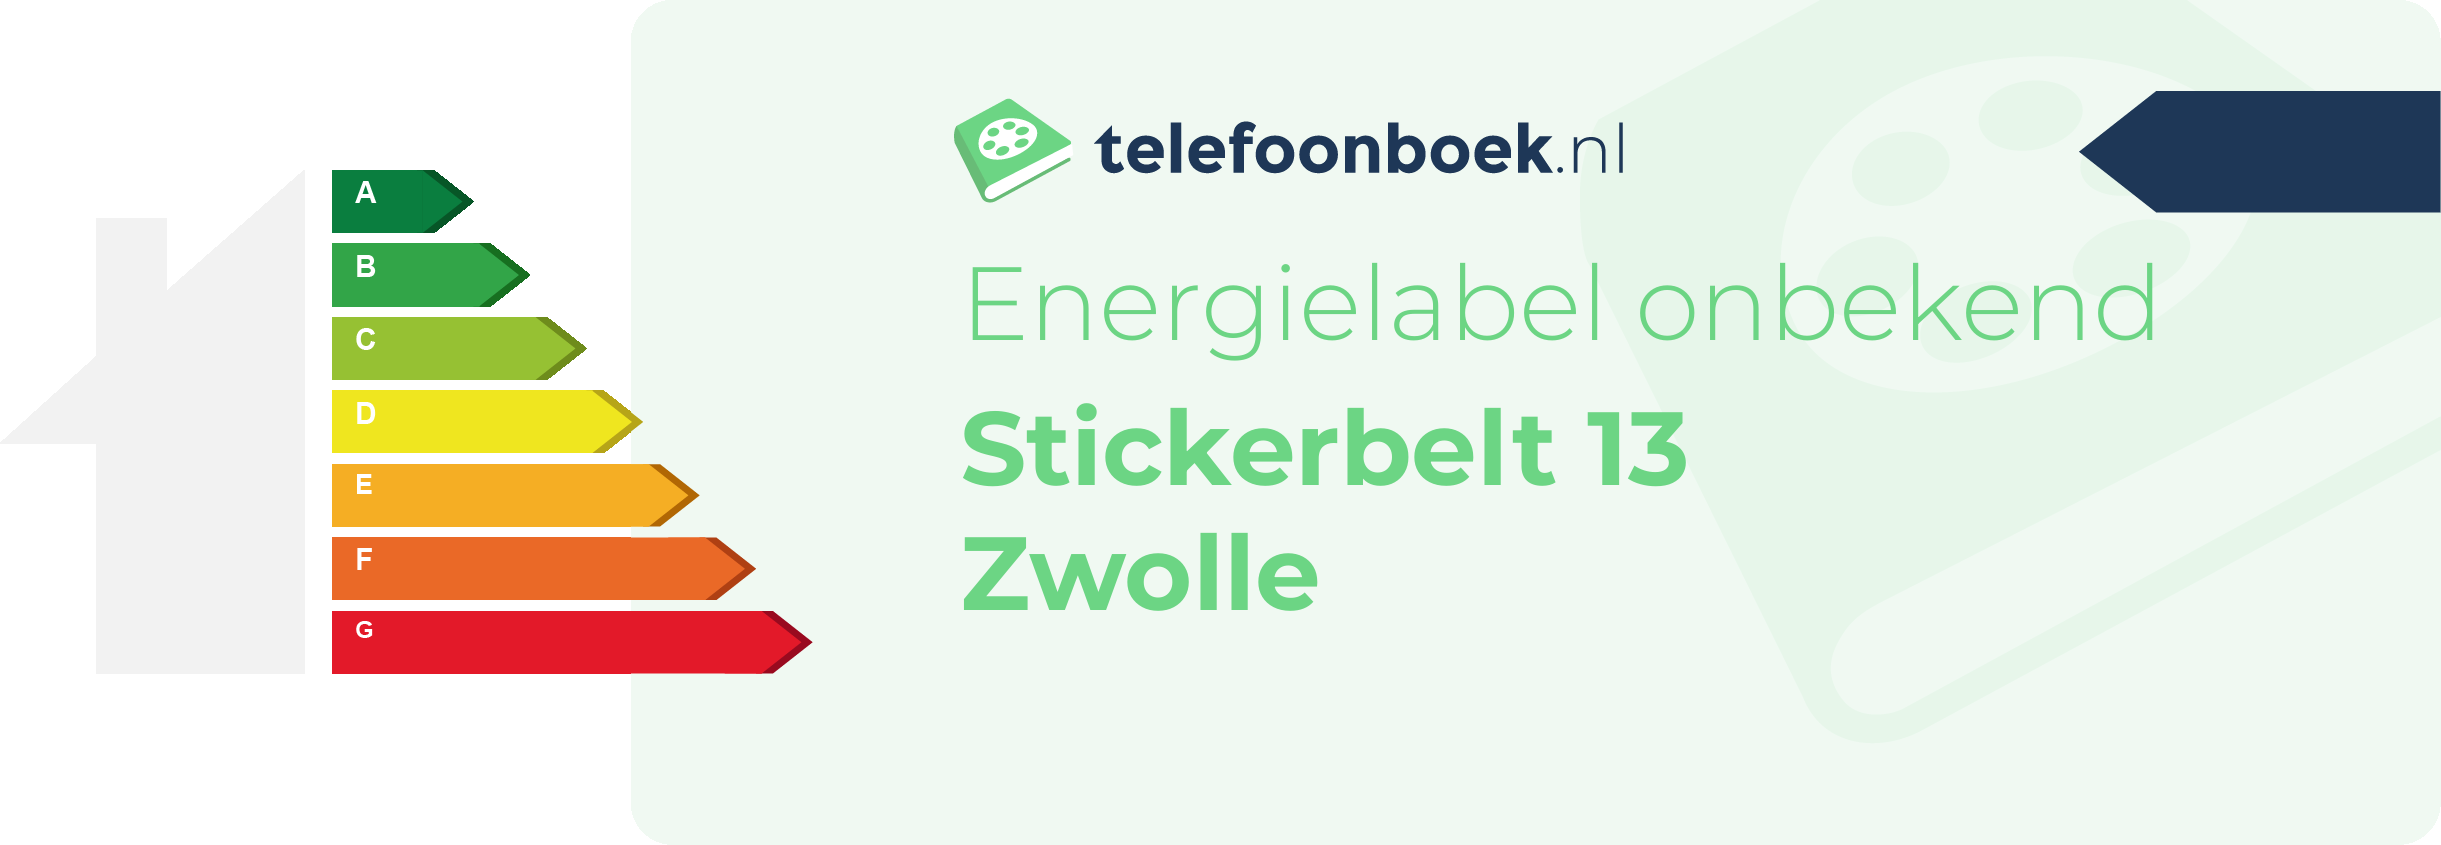 Energielabel Stickerbelt 13 Zwolle